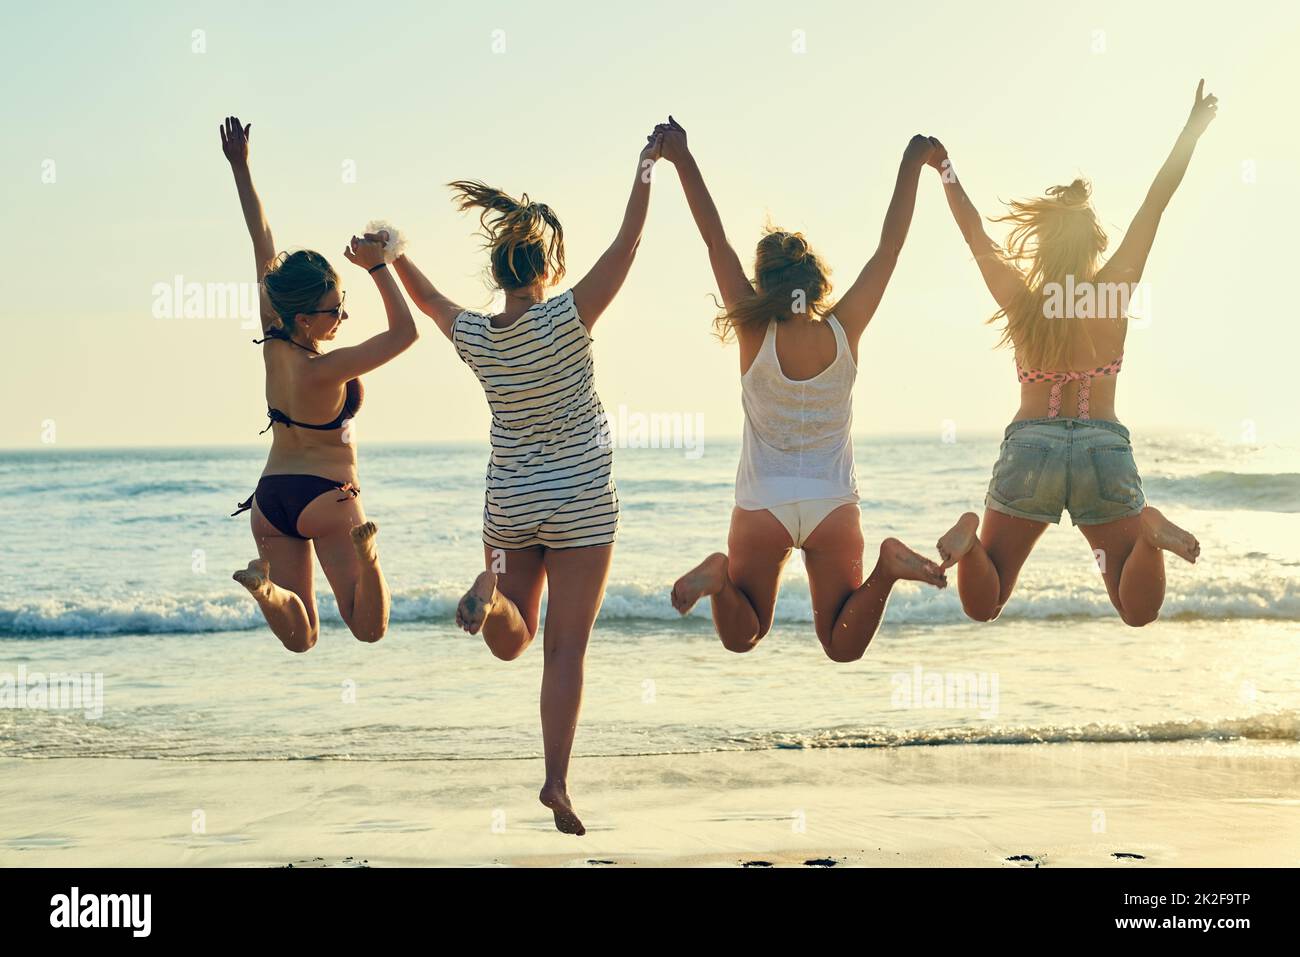 Strandtage sind die besten Tage. Rückansicht der besten Freundinnen, die am Strand in der Luft springen. Stockfoto